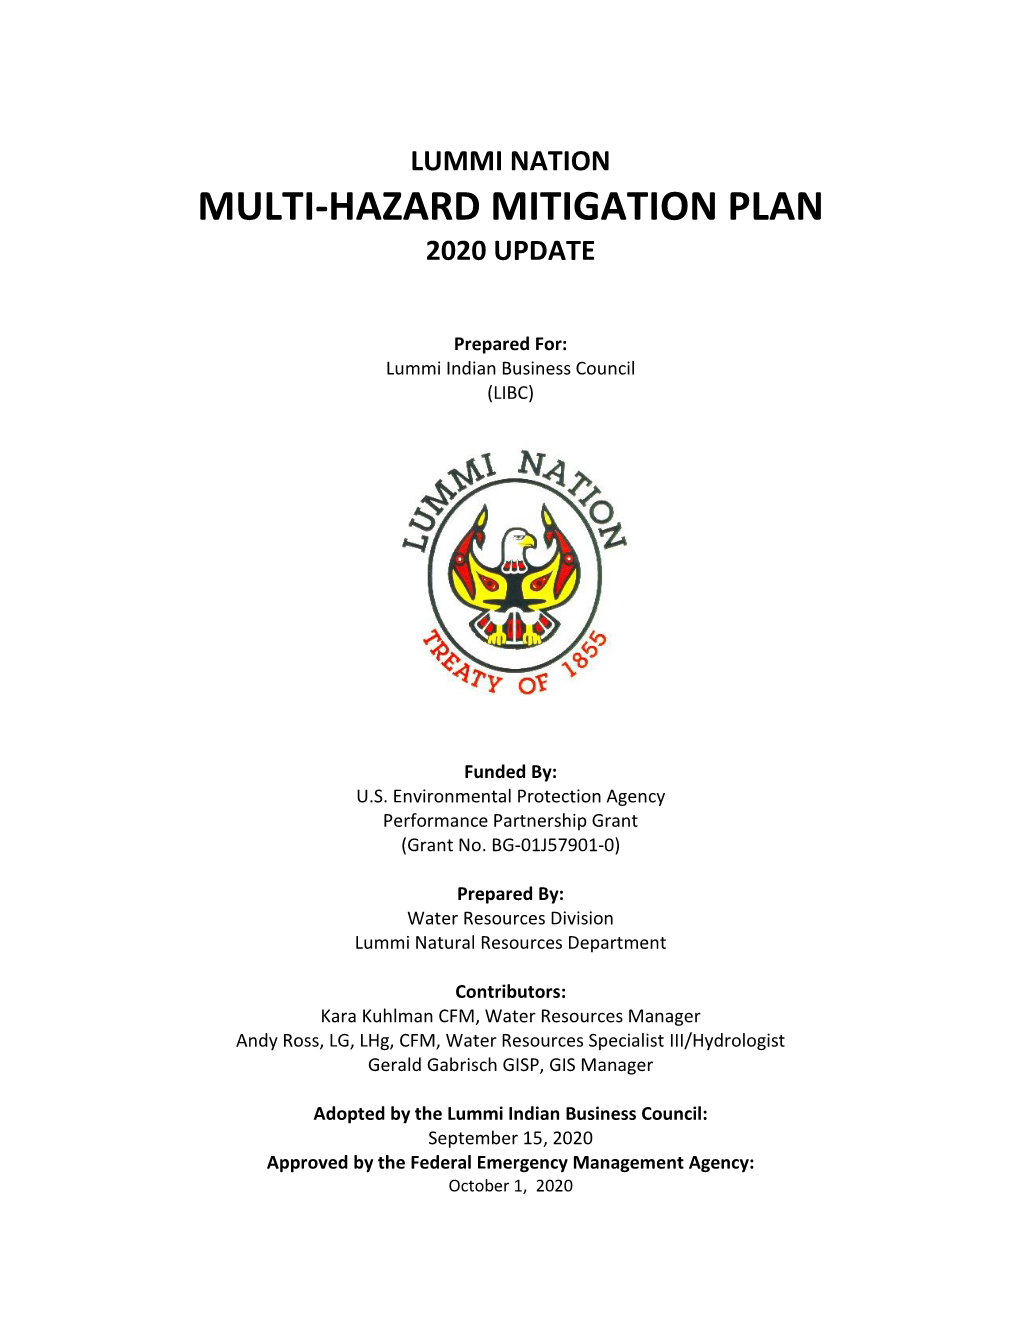 Multi-Hazard Mitigation Plan 2020 Update